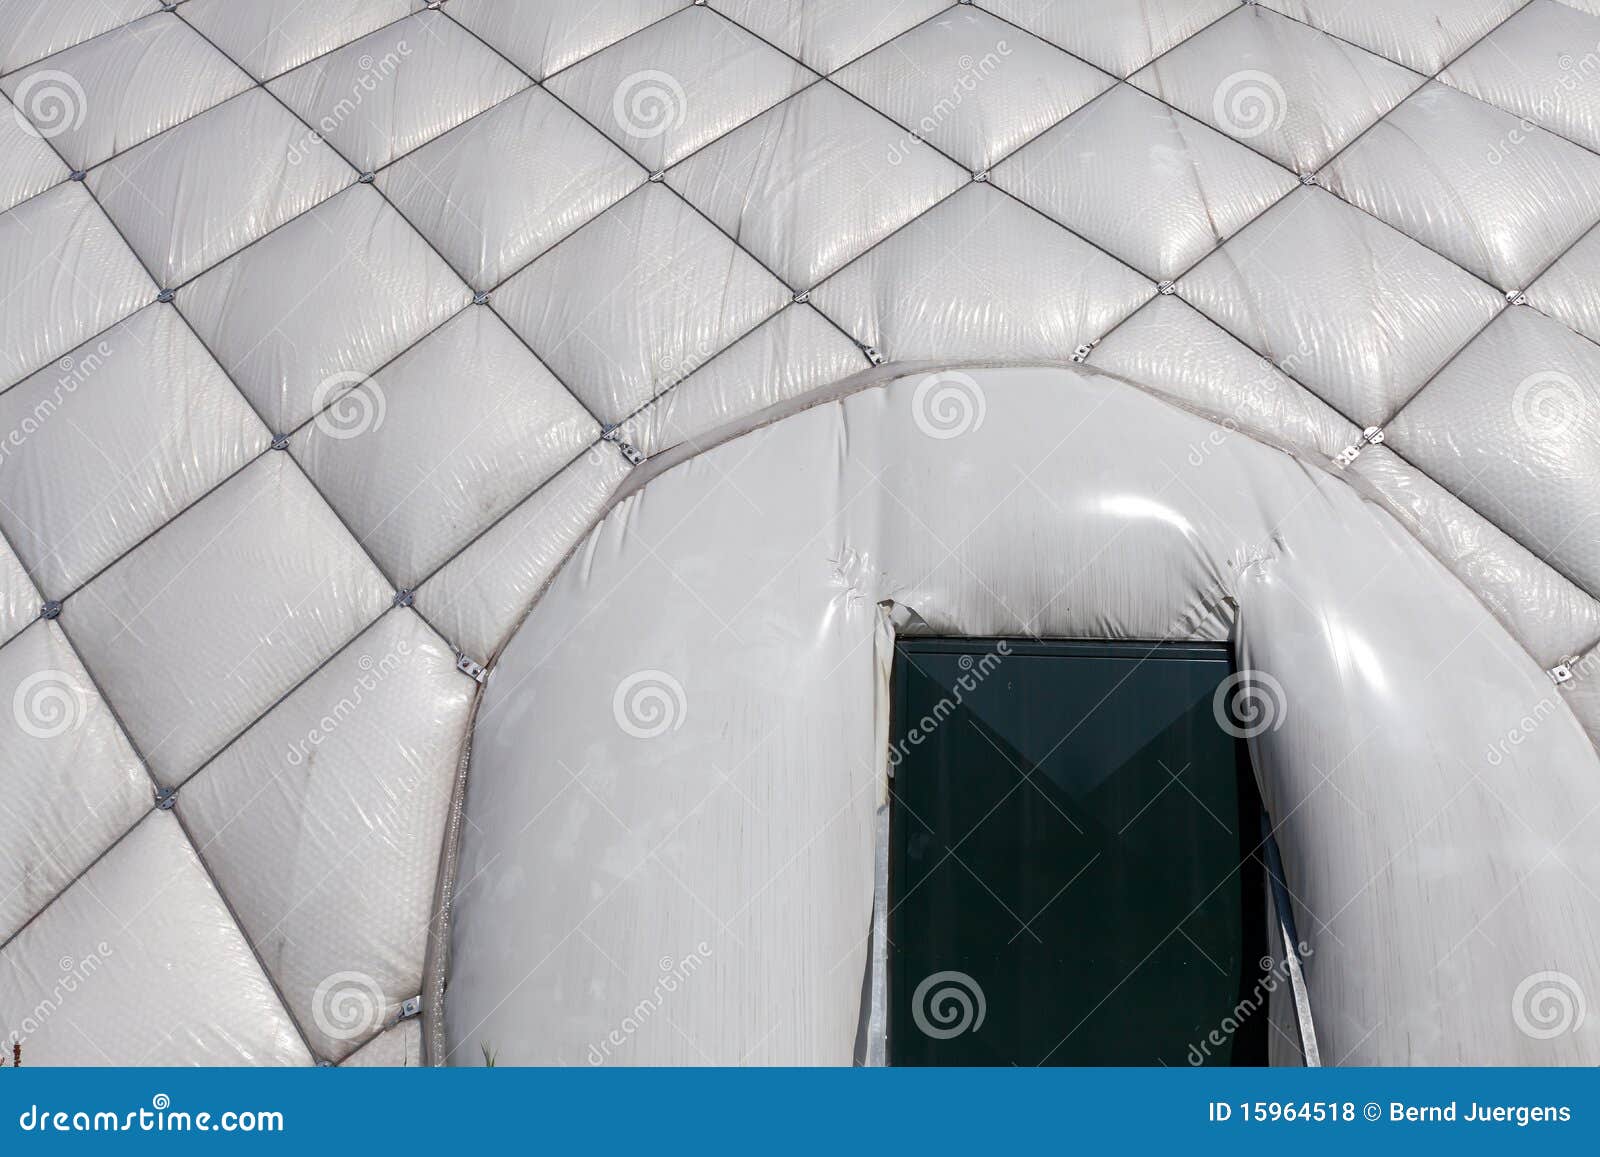 Tür. Detail einer Luft blies Zelt an einem sonnigen Tag auf